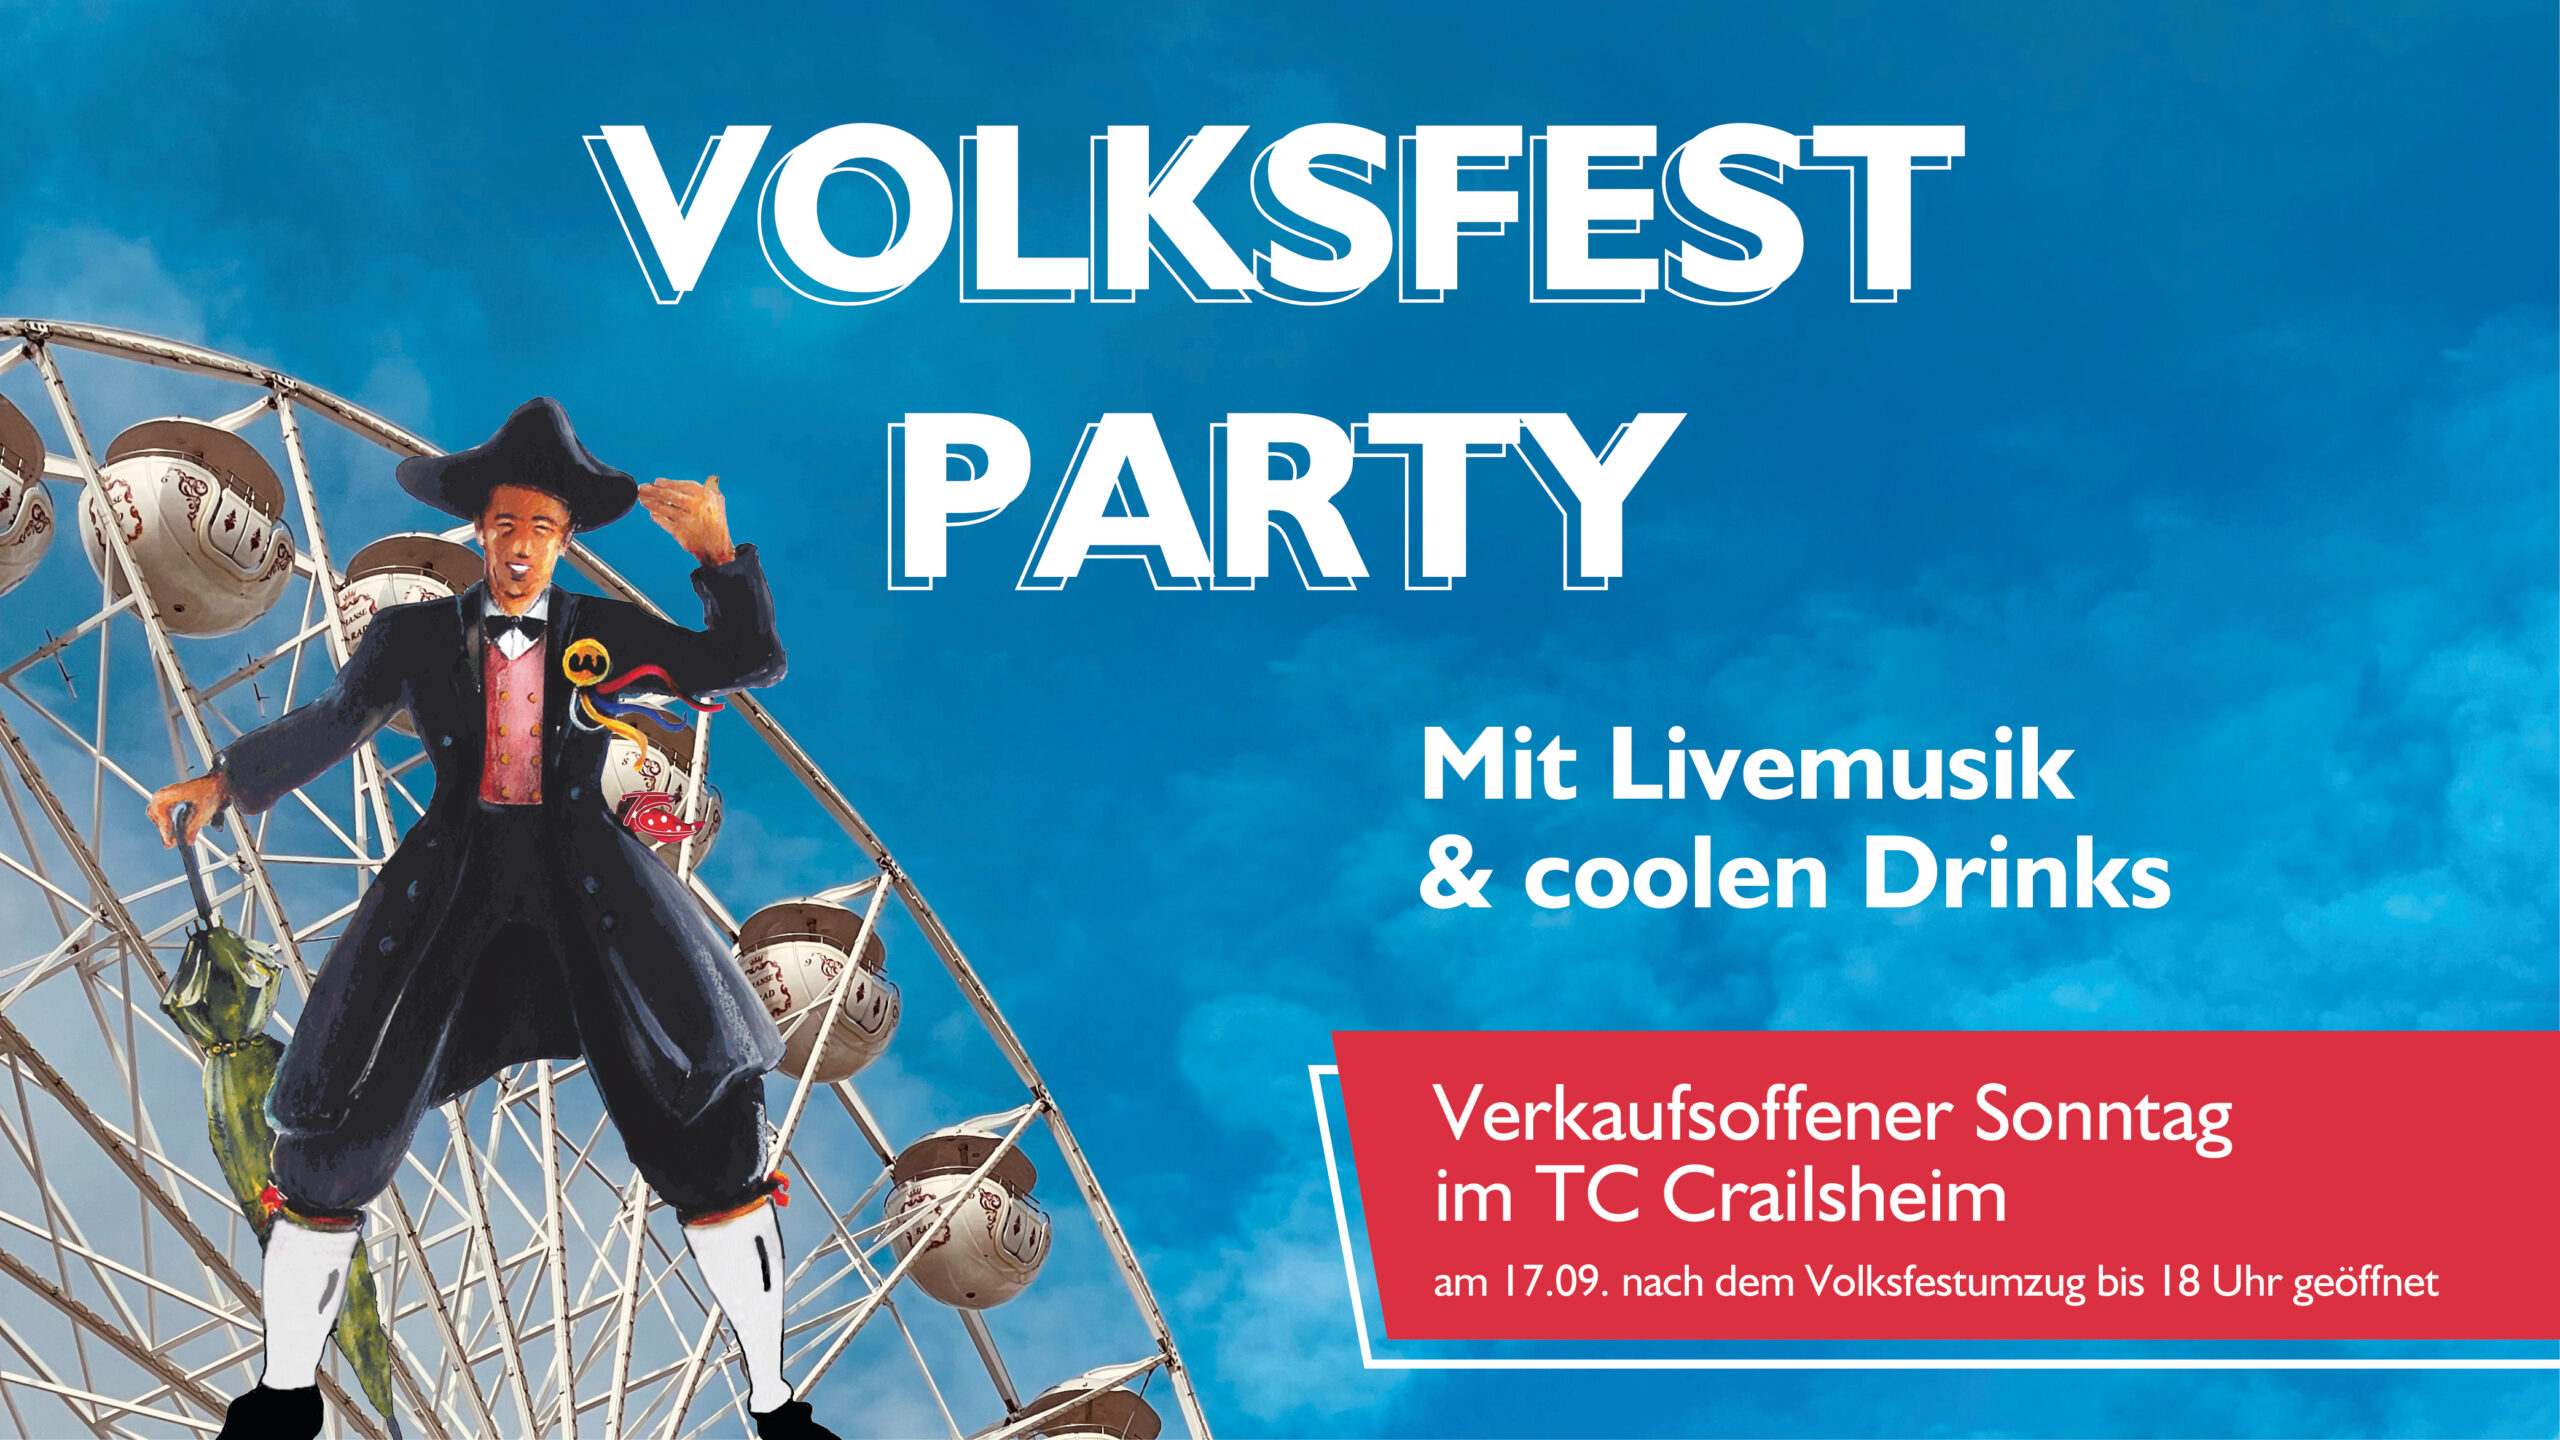 Volksfest Party & verkaufsoffener Sonntag in Crailsheim